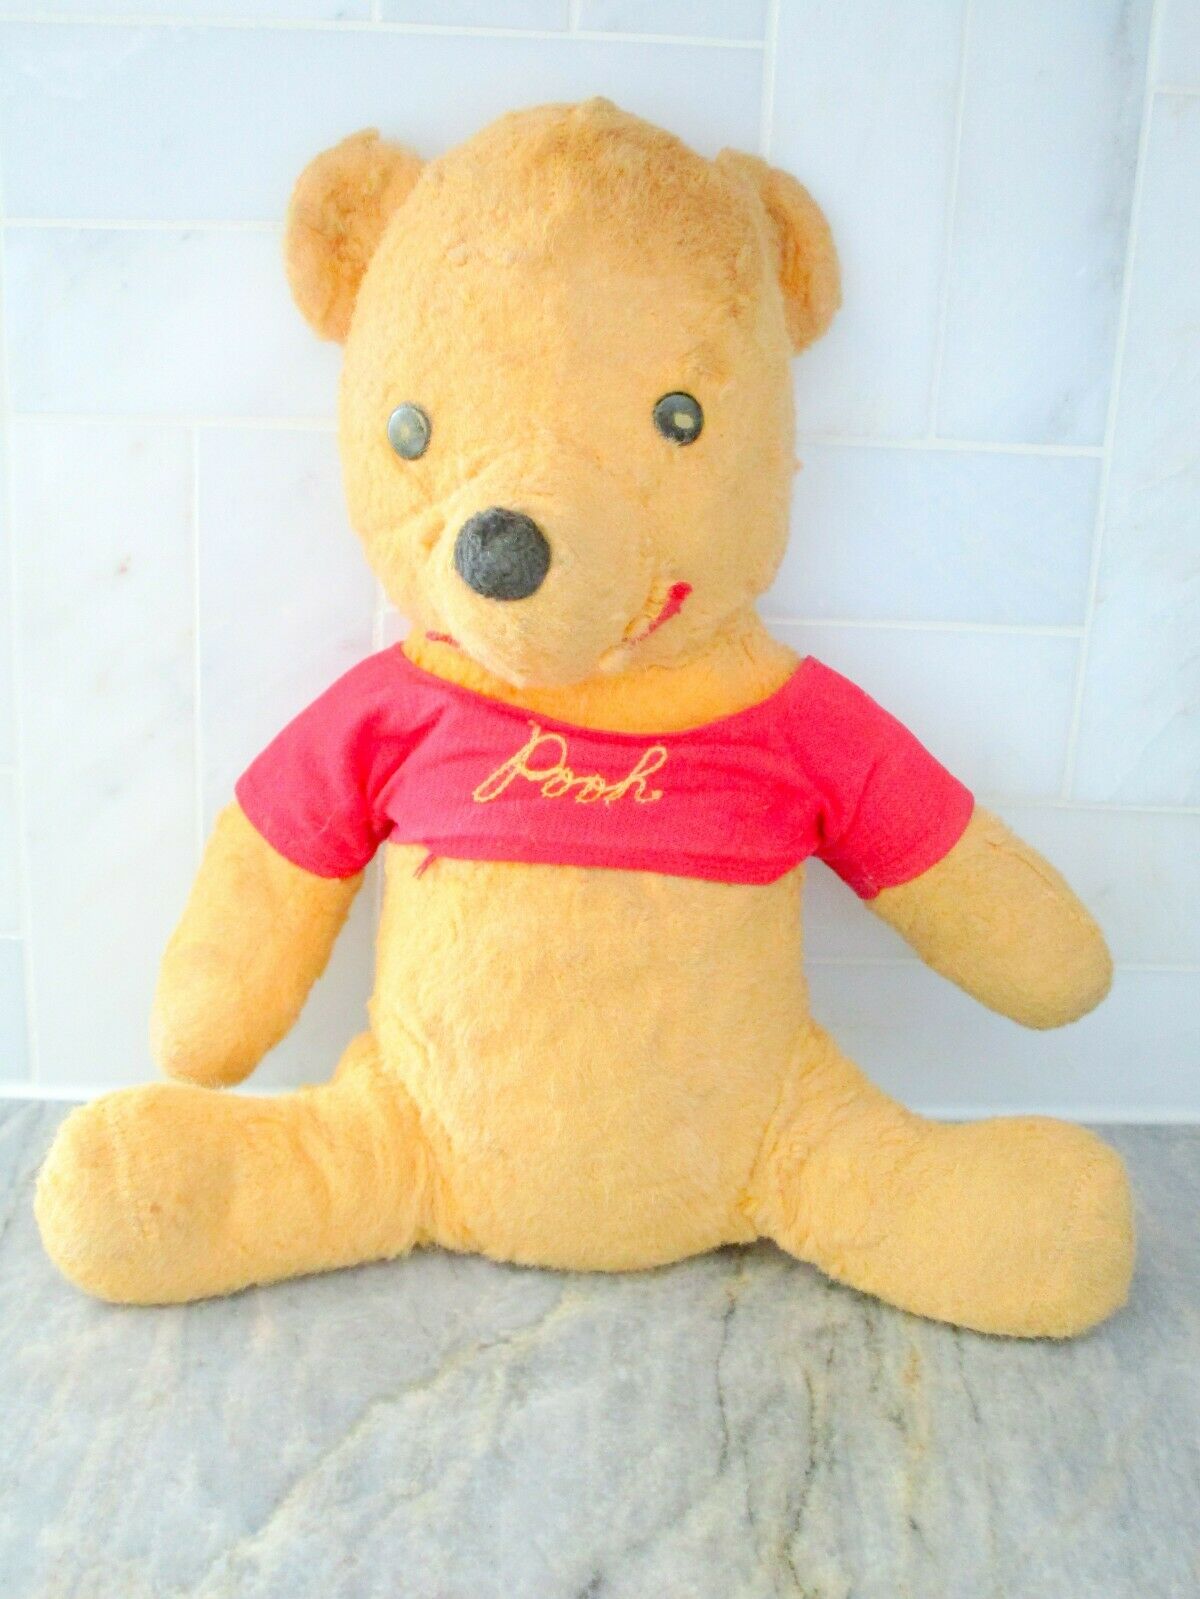 Vintage Old Winnie The Pooh Teddy Bear Gund Plush Stuffed 11 Inches 1964 Disney